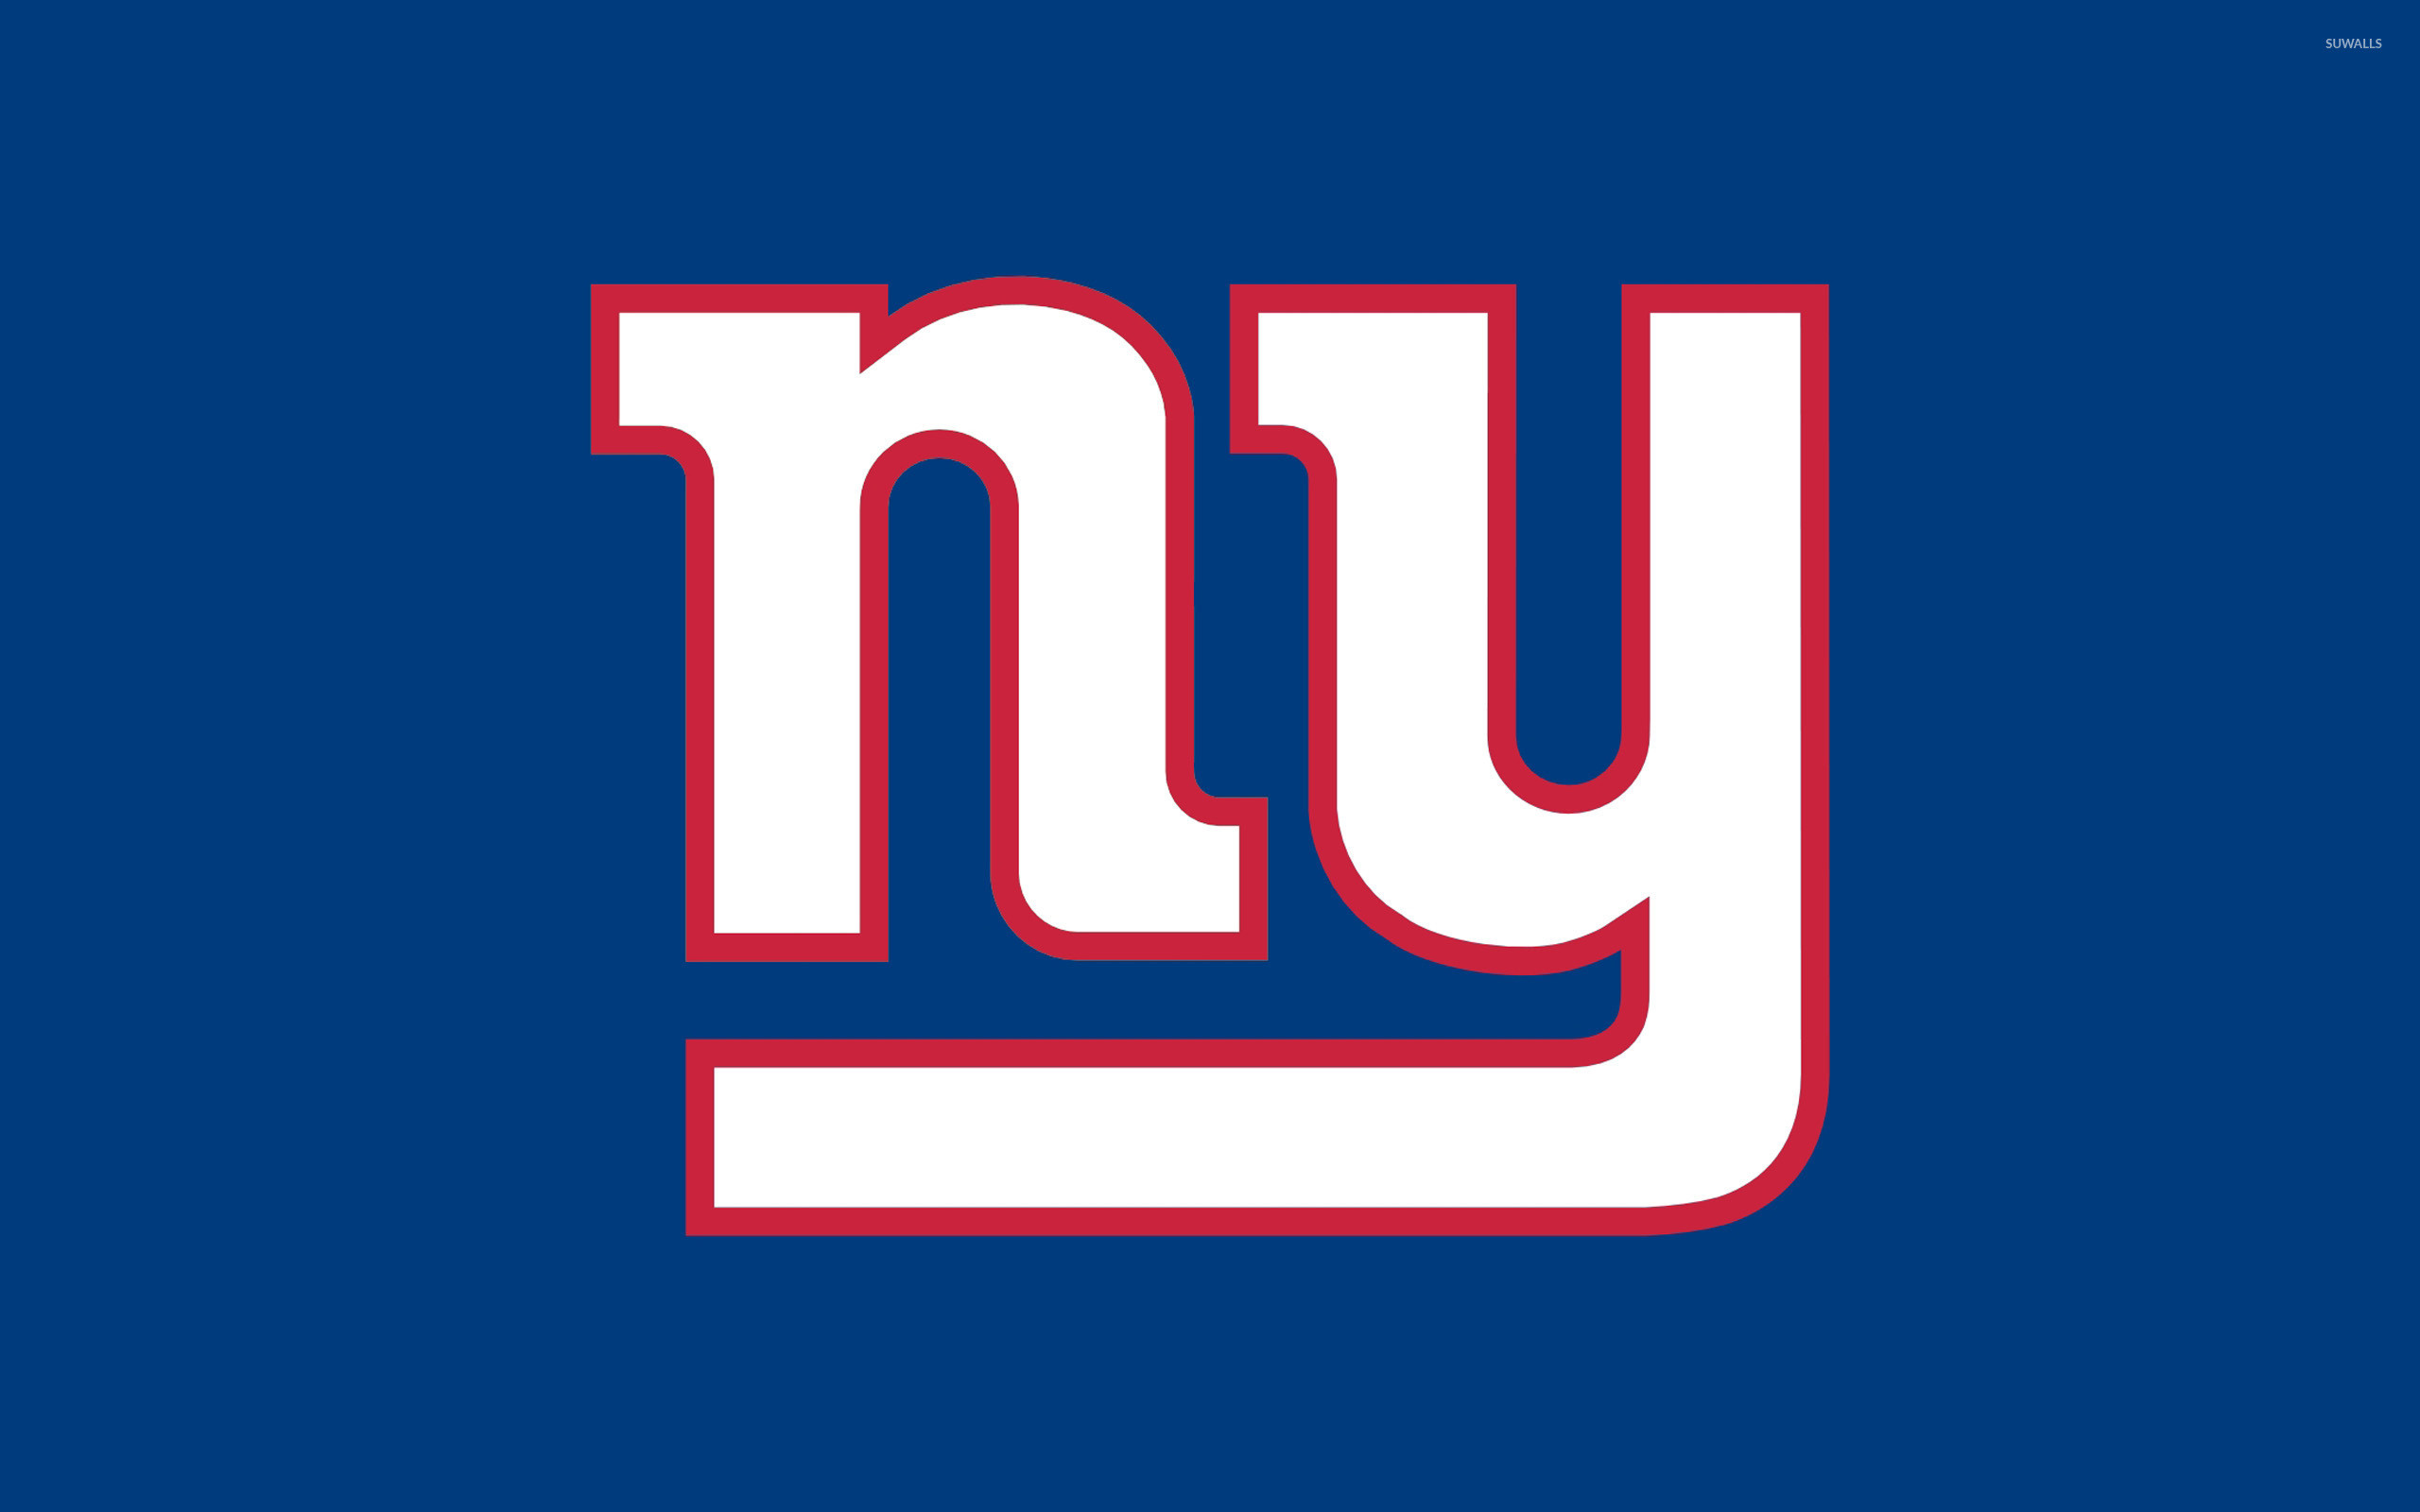 new-york-giants-logo-wallpaper-63-images